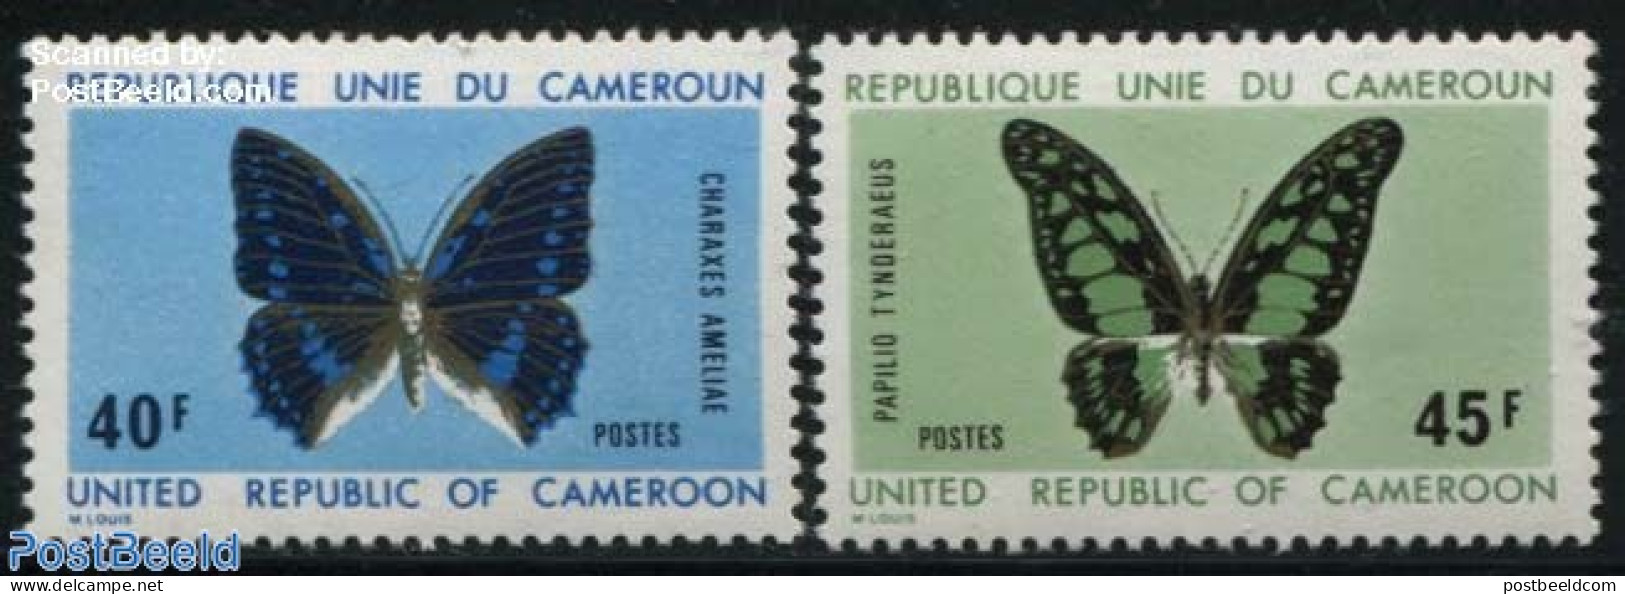 Cameroon 1972 Butterflies 2v, Mint NH, Nature - Butterflies - Cameroun (1960-...)